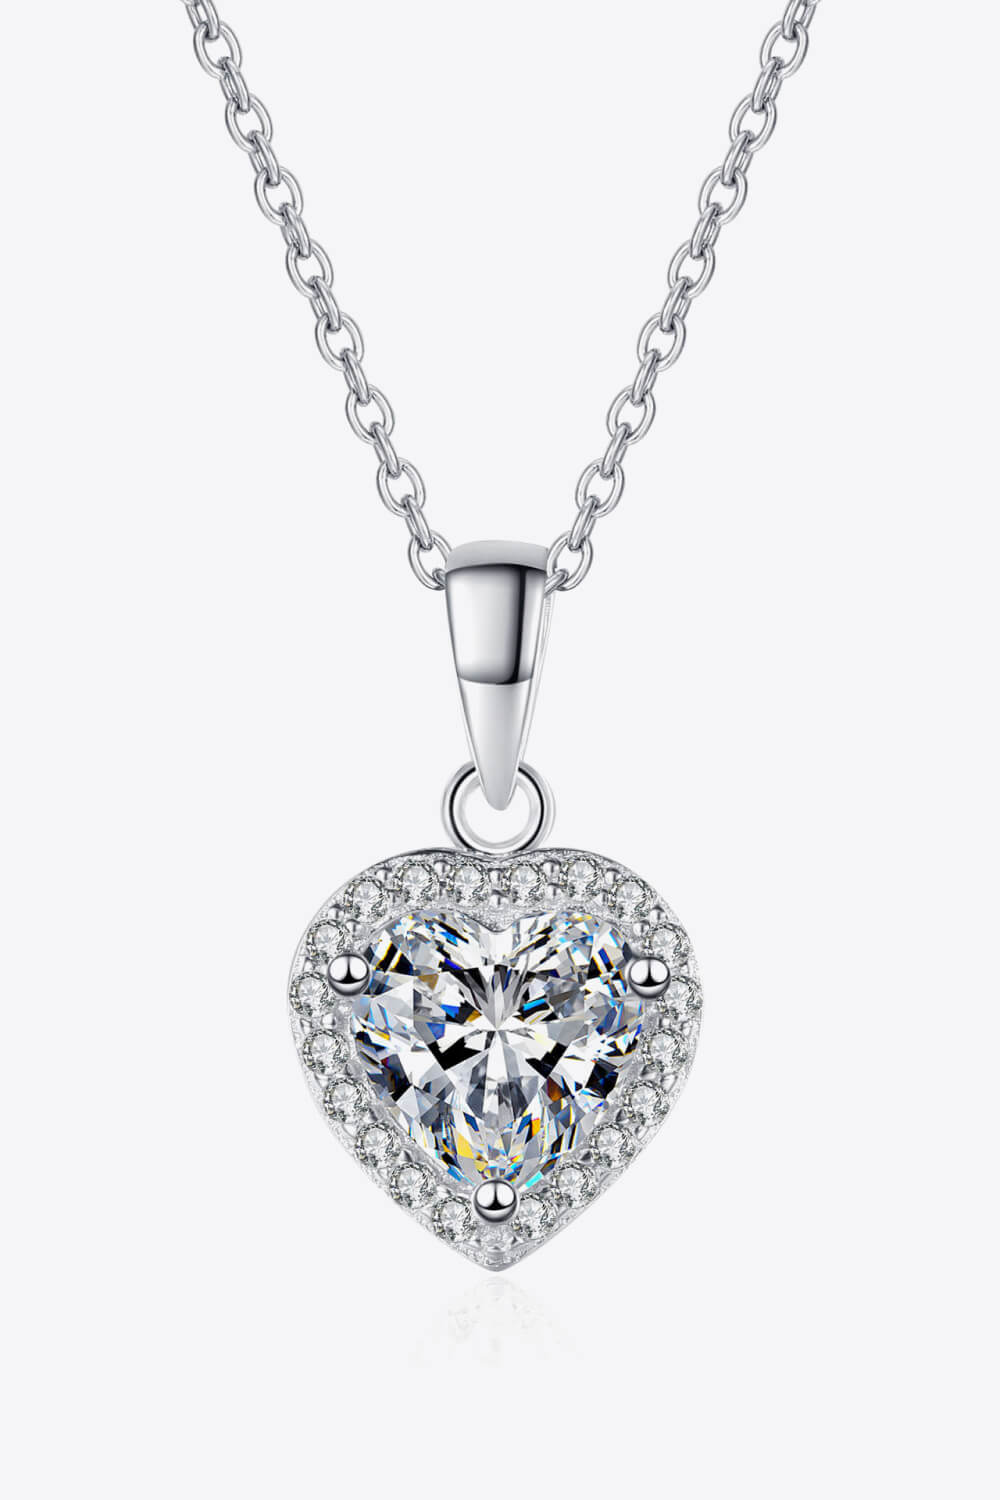 1 Carat Moissanite Heart Pendant Chain Necklace - DromedarShop.com Online Boutique